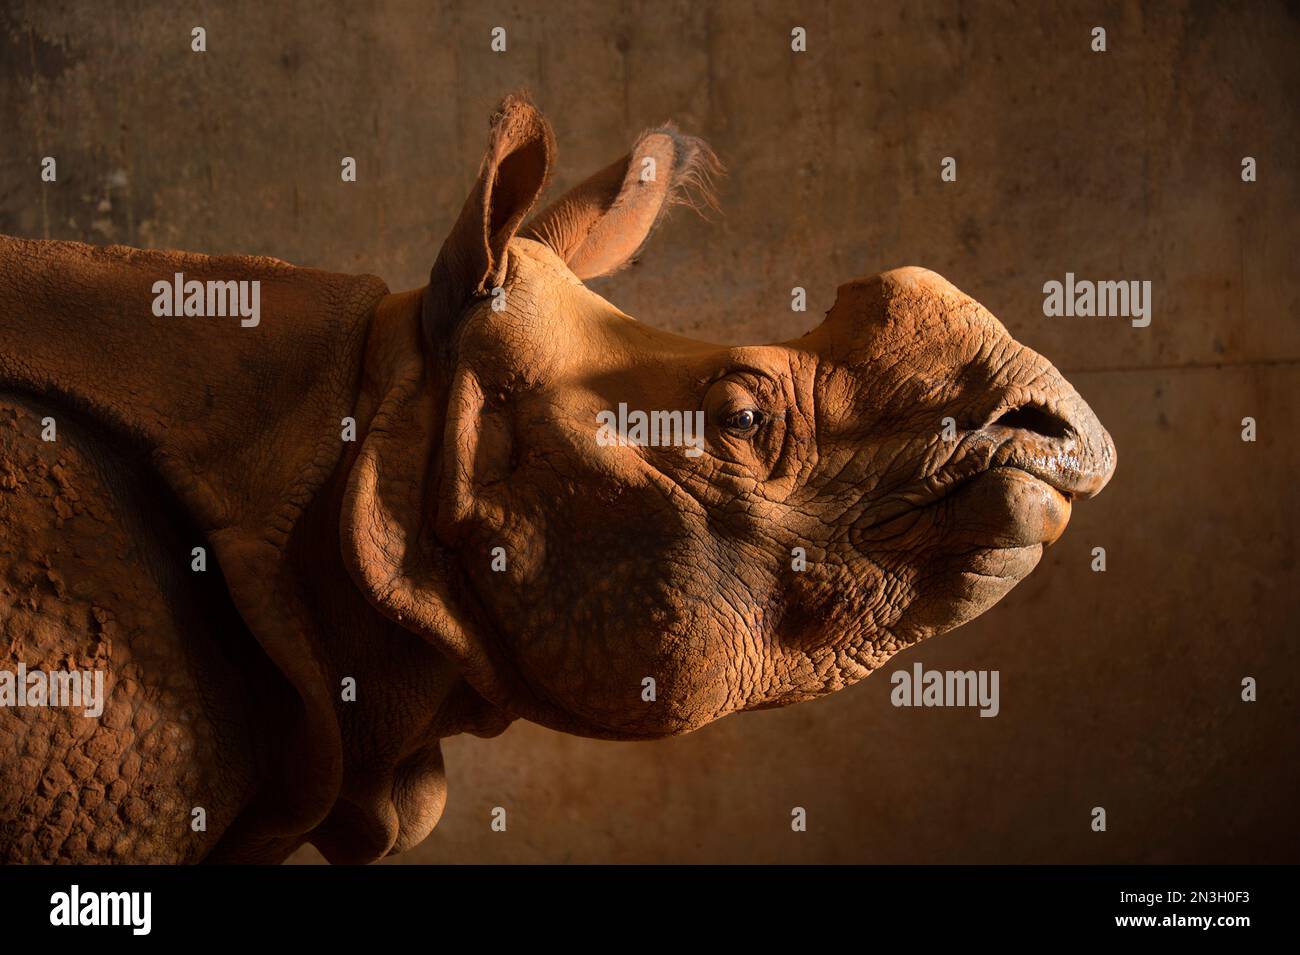 Portrait d'une femelle de rhinocéros indiens (Rhinoceros unicornis) dans un zoo; Oklahoma City, Oklahoma, États-Unis d'Amérique Banque D'Images